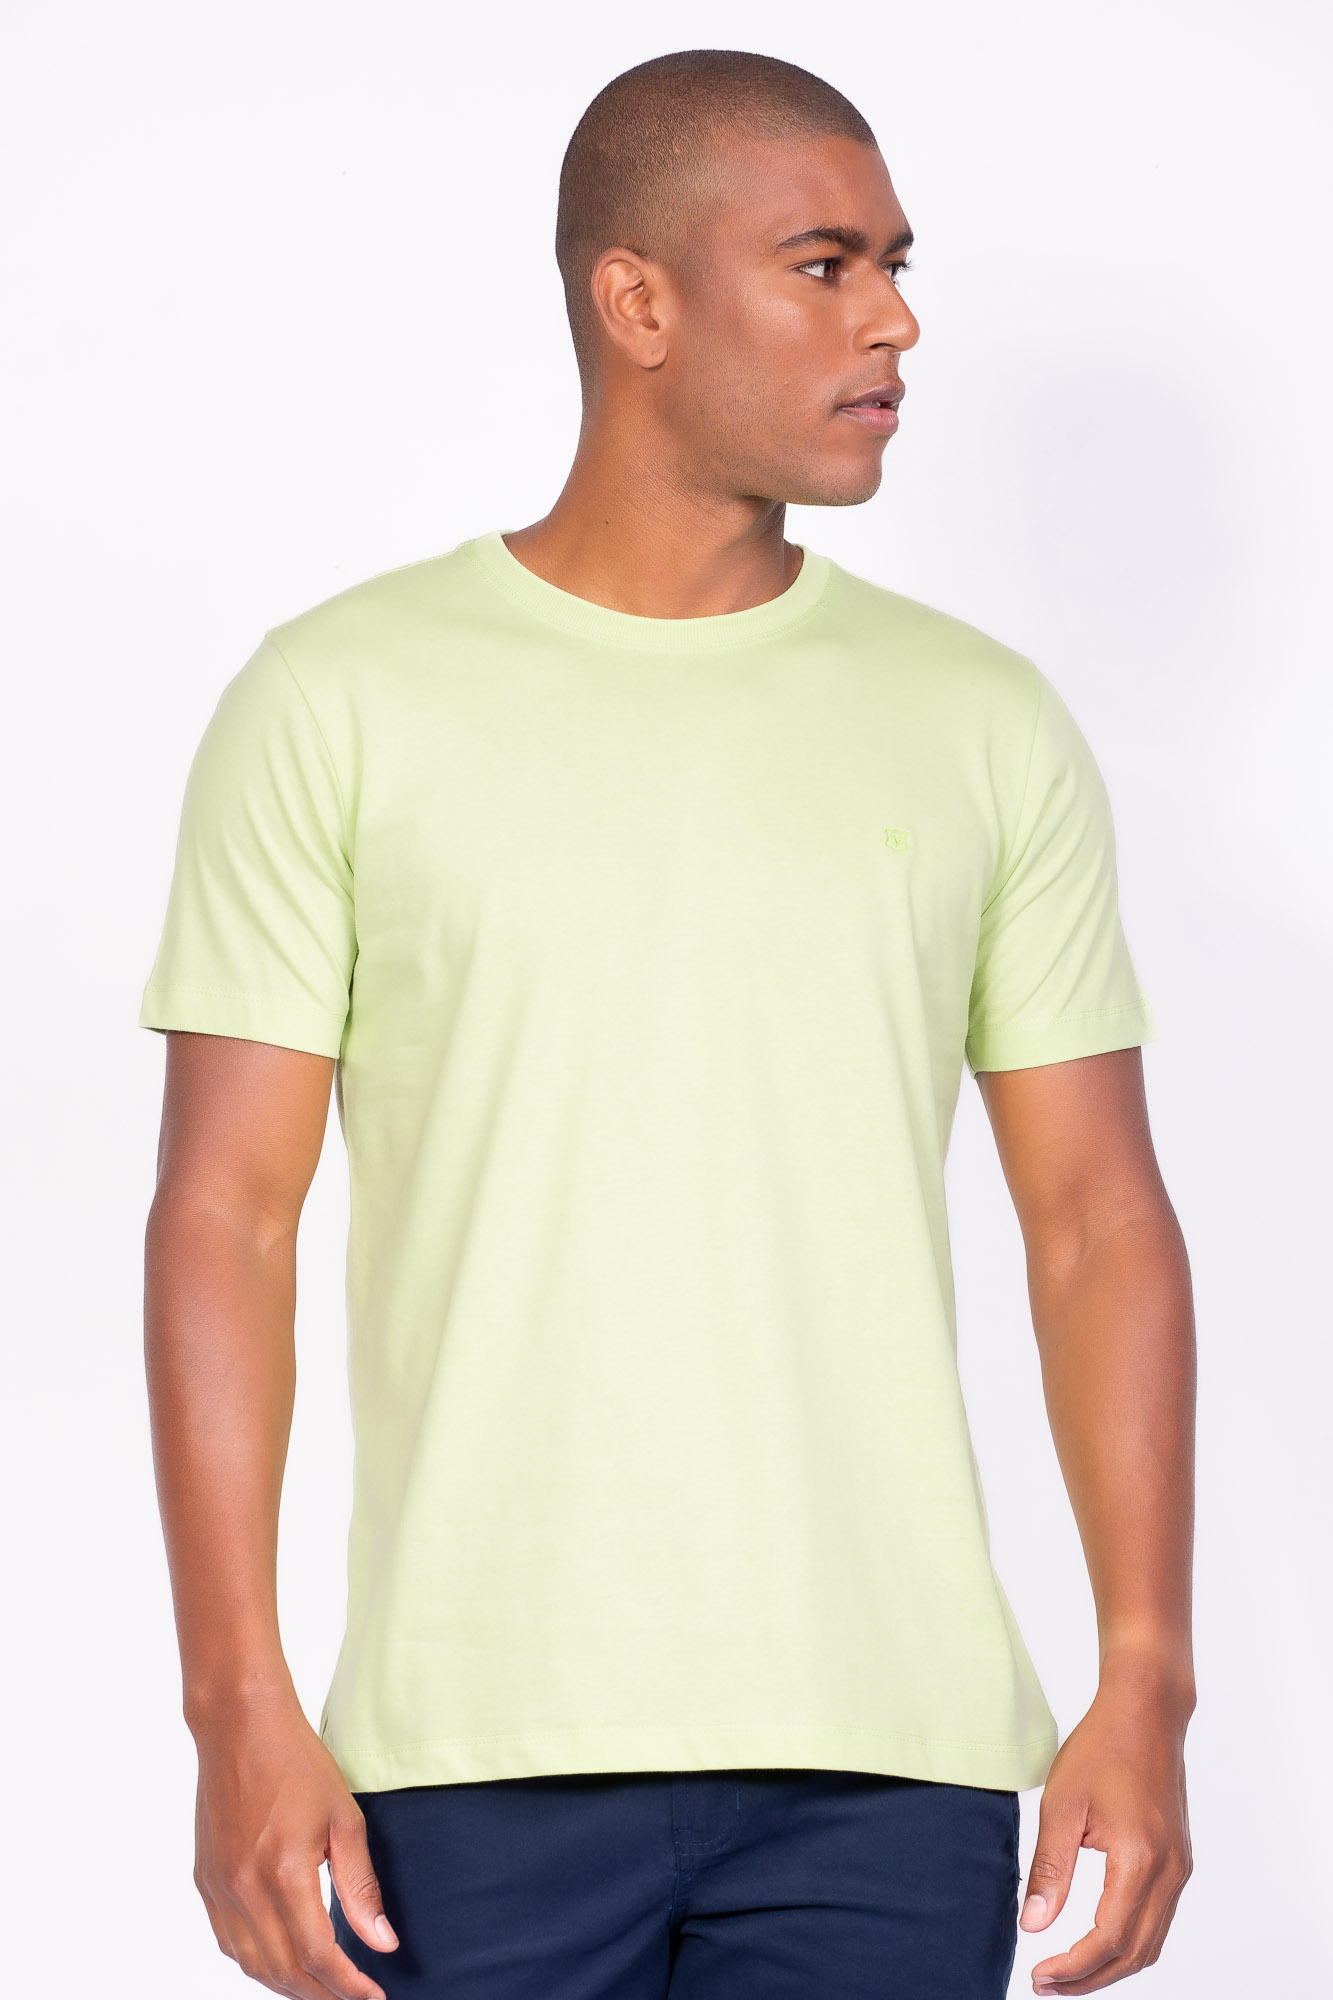 Camiseta Básica 100% algodão Verde lemon